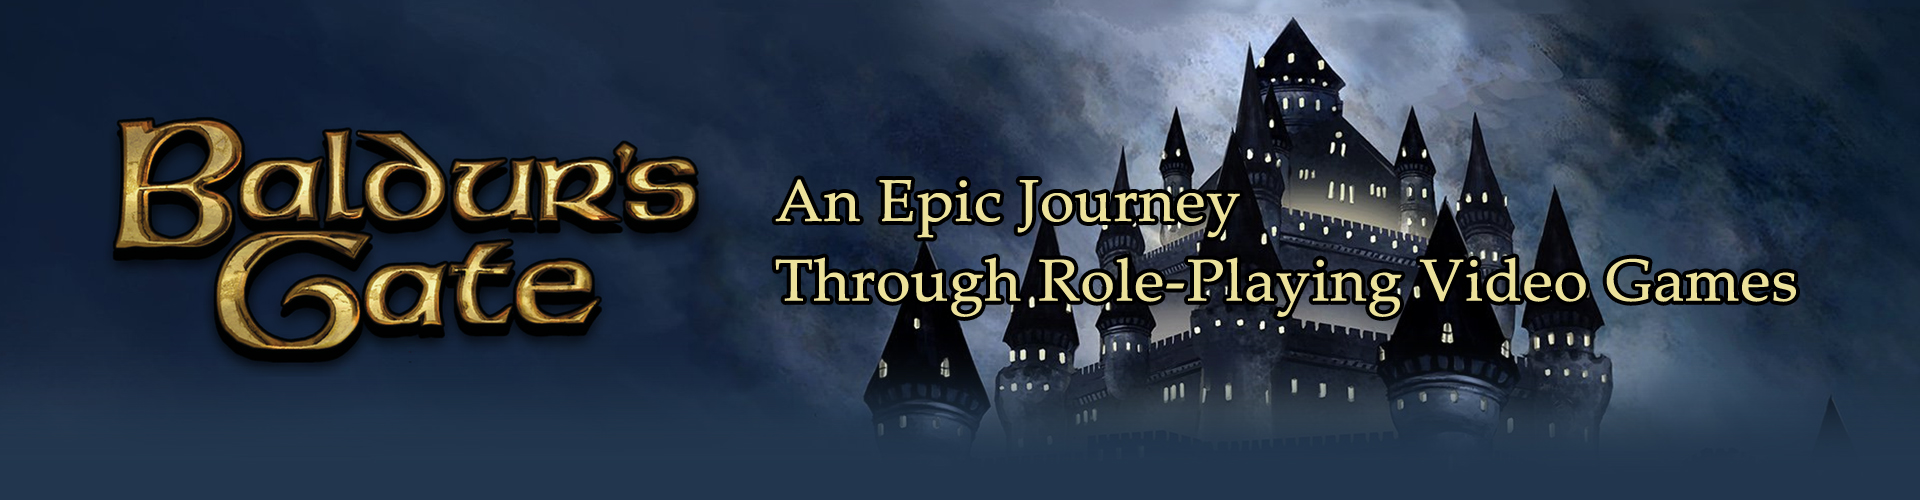 Jeux Baldur's Gate: La série de RPG type Donjons et Dragons